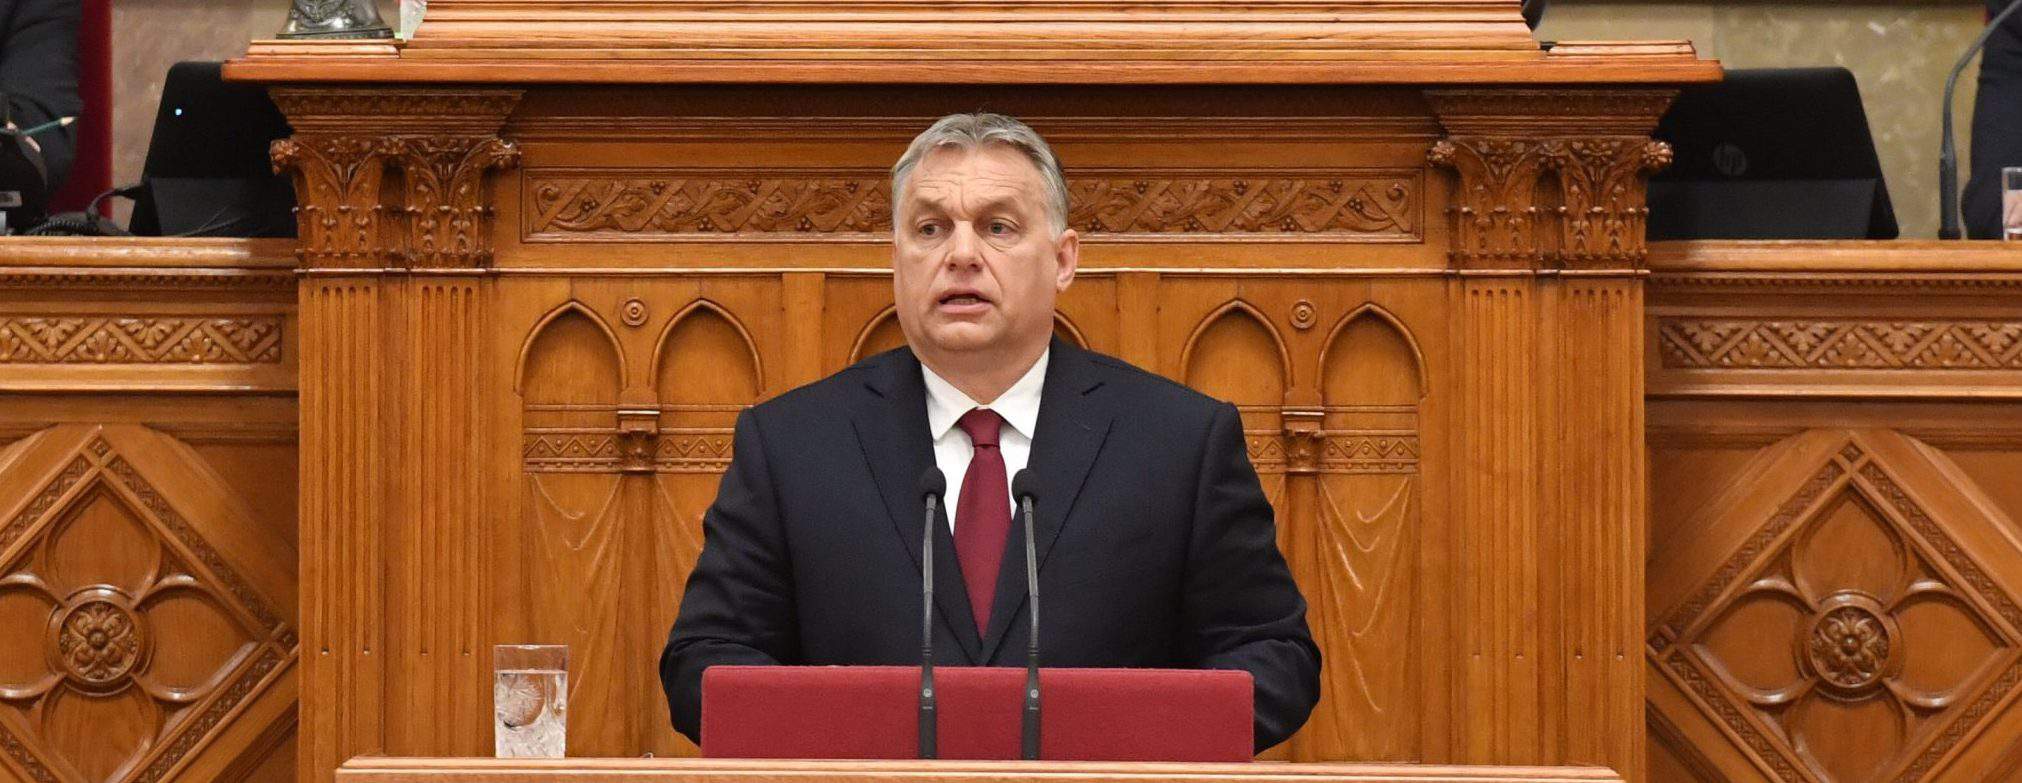 PM Orbán المجر